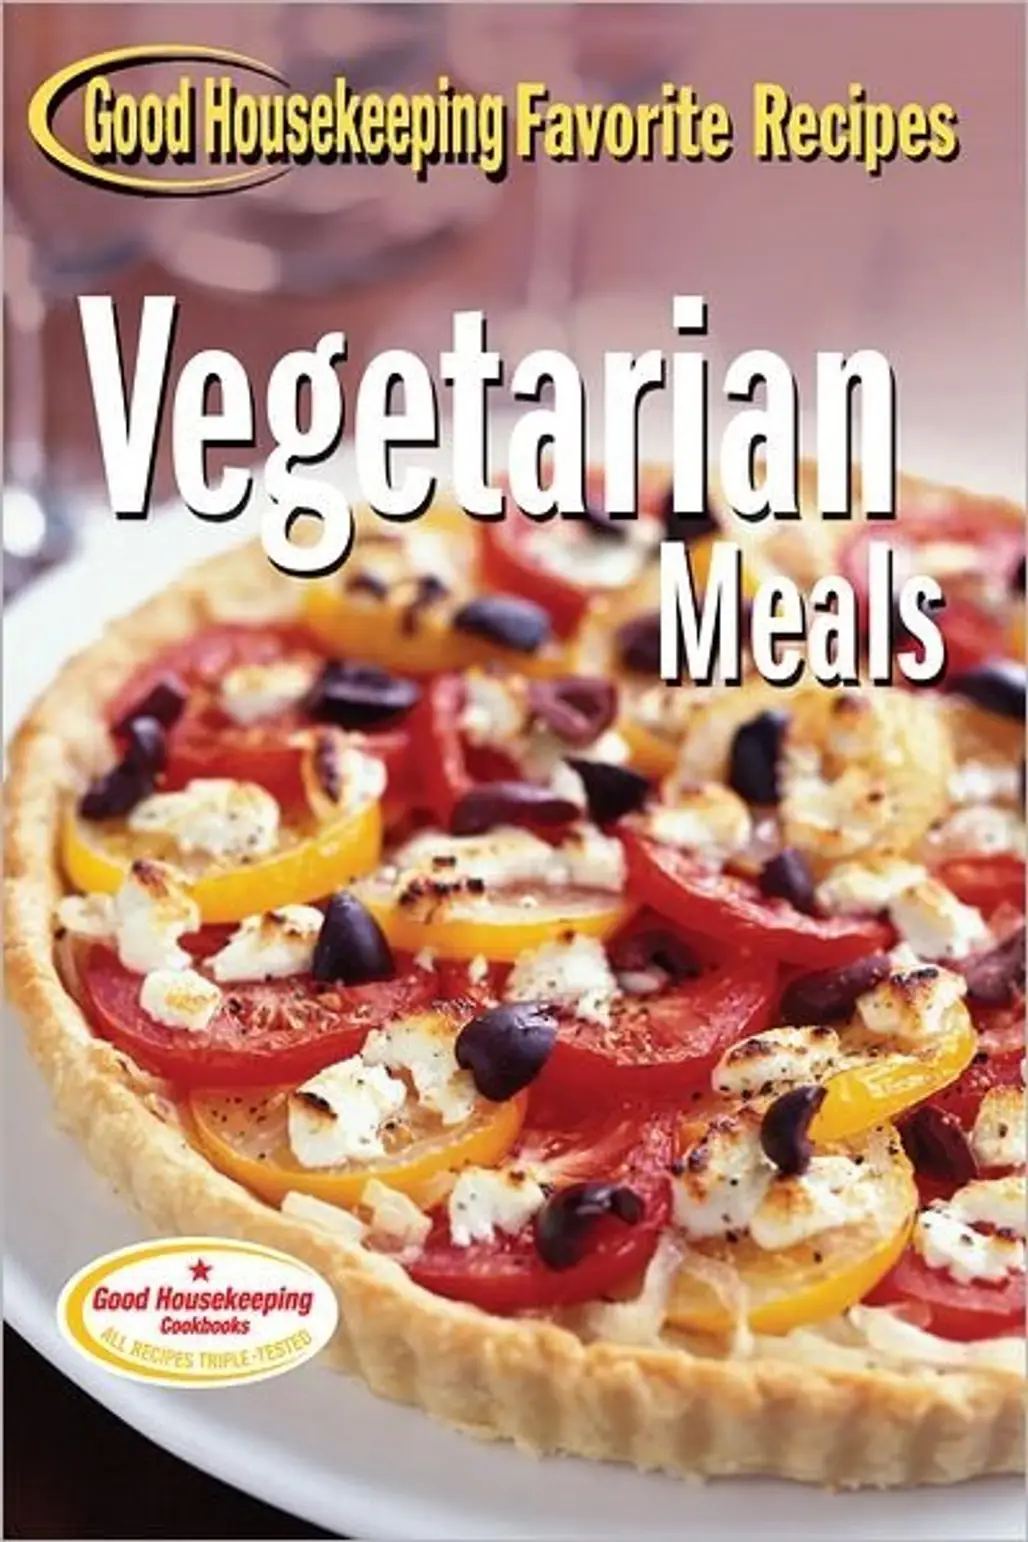 Good Housekeeping Favorite Recipes: Vegetarian Meals